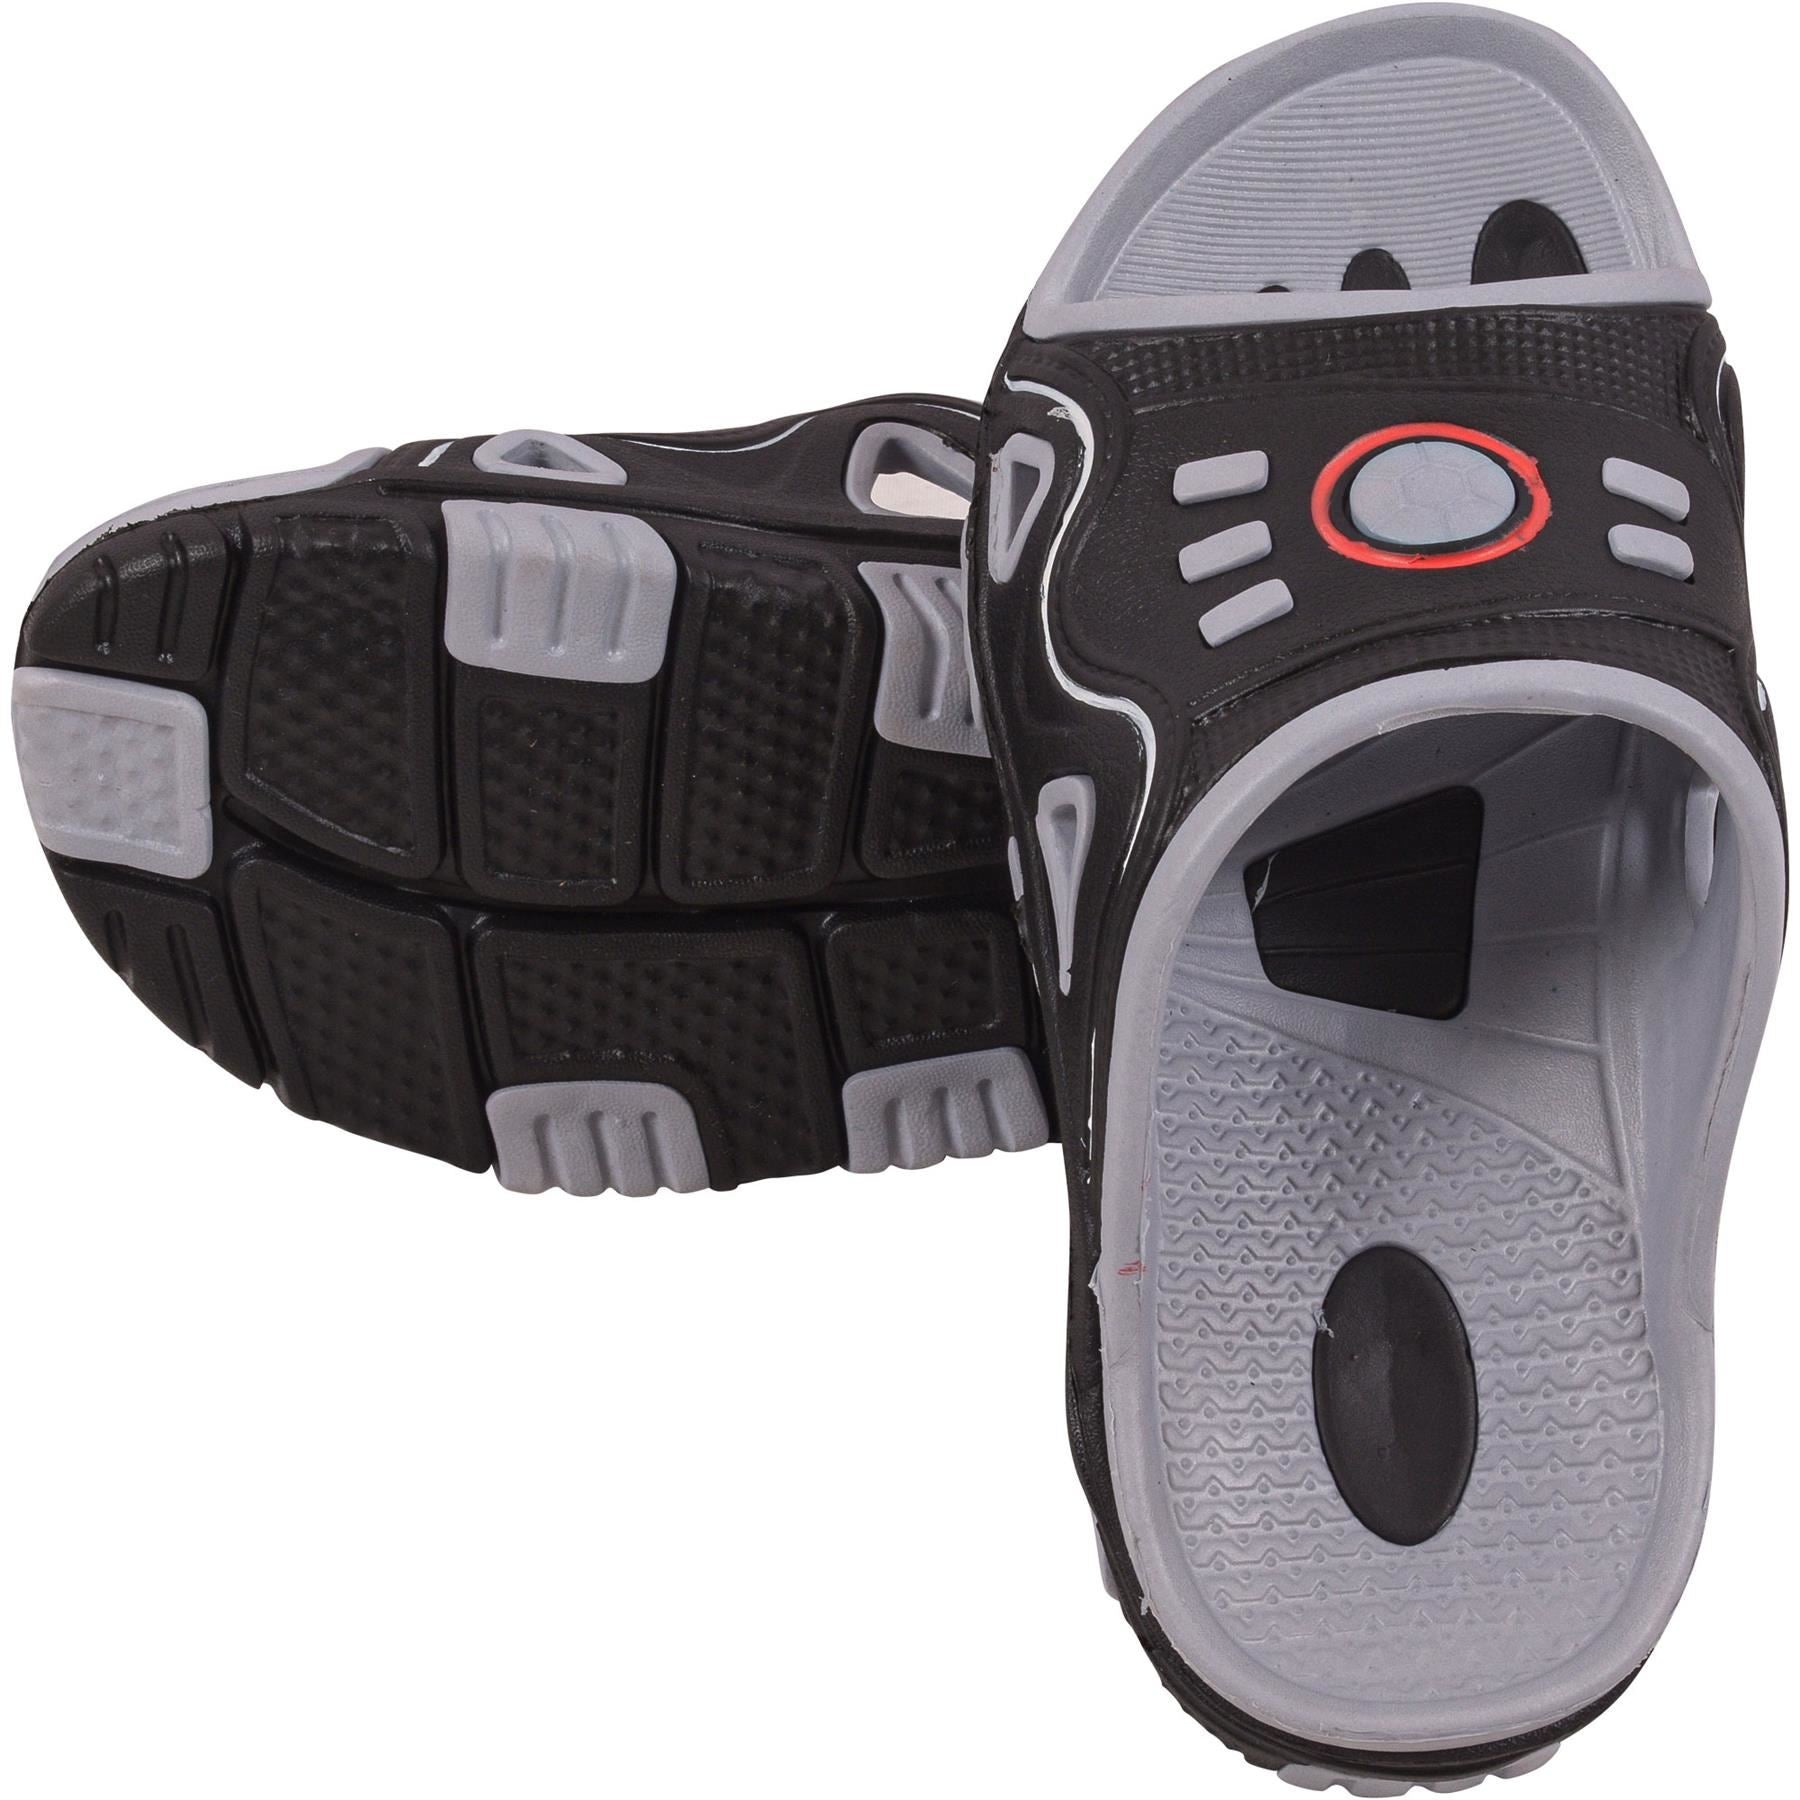 Kids Boys Summer Pool Sliders Soft Slide Sandals Swim Shoe Open Toe Slippers